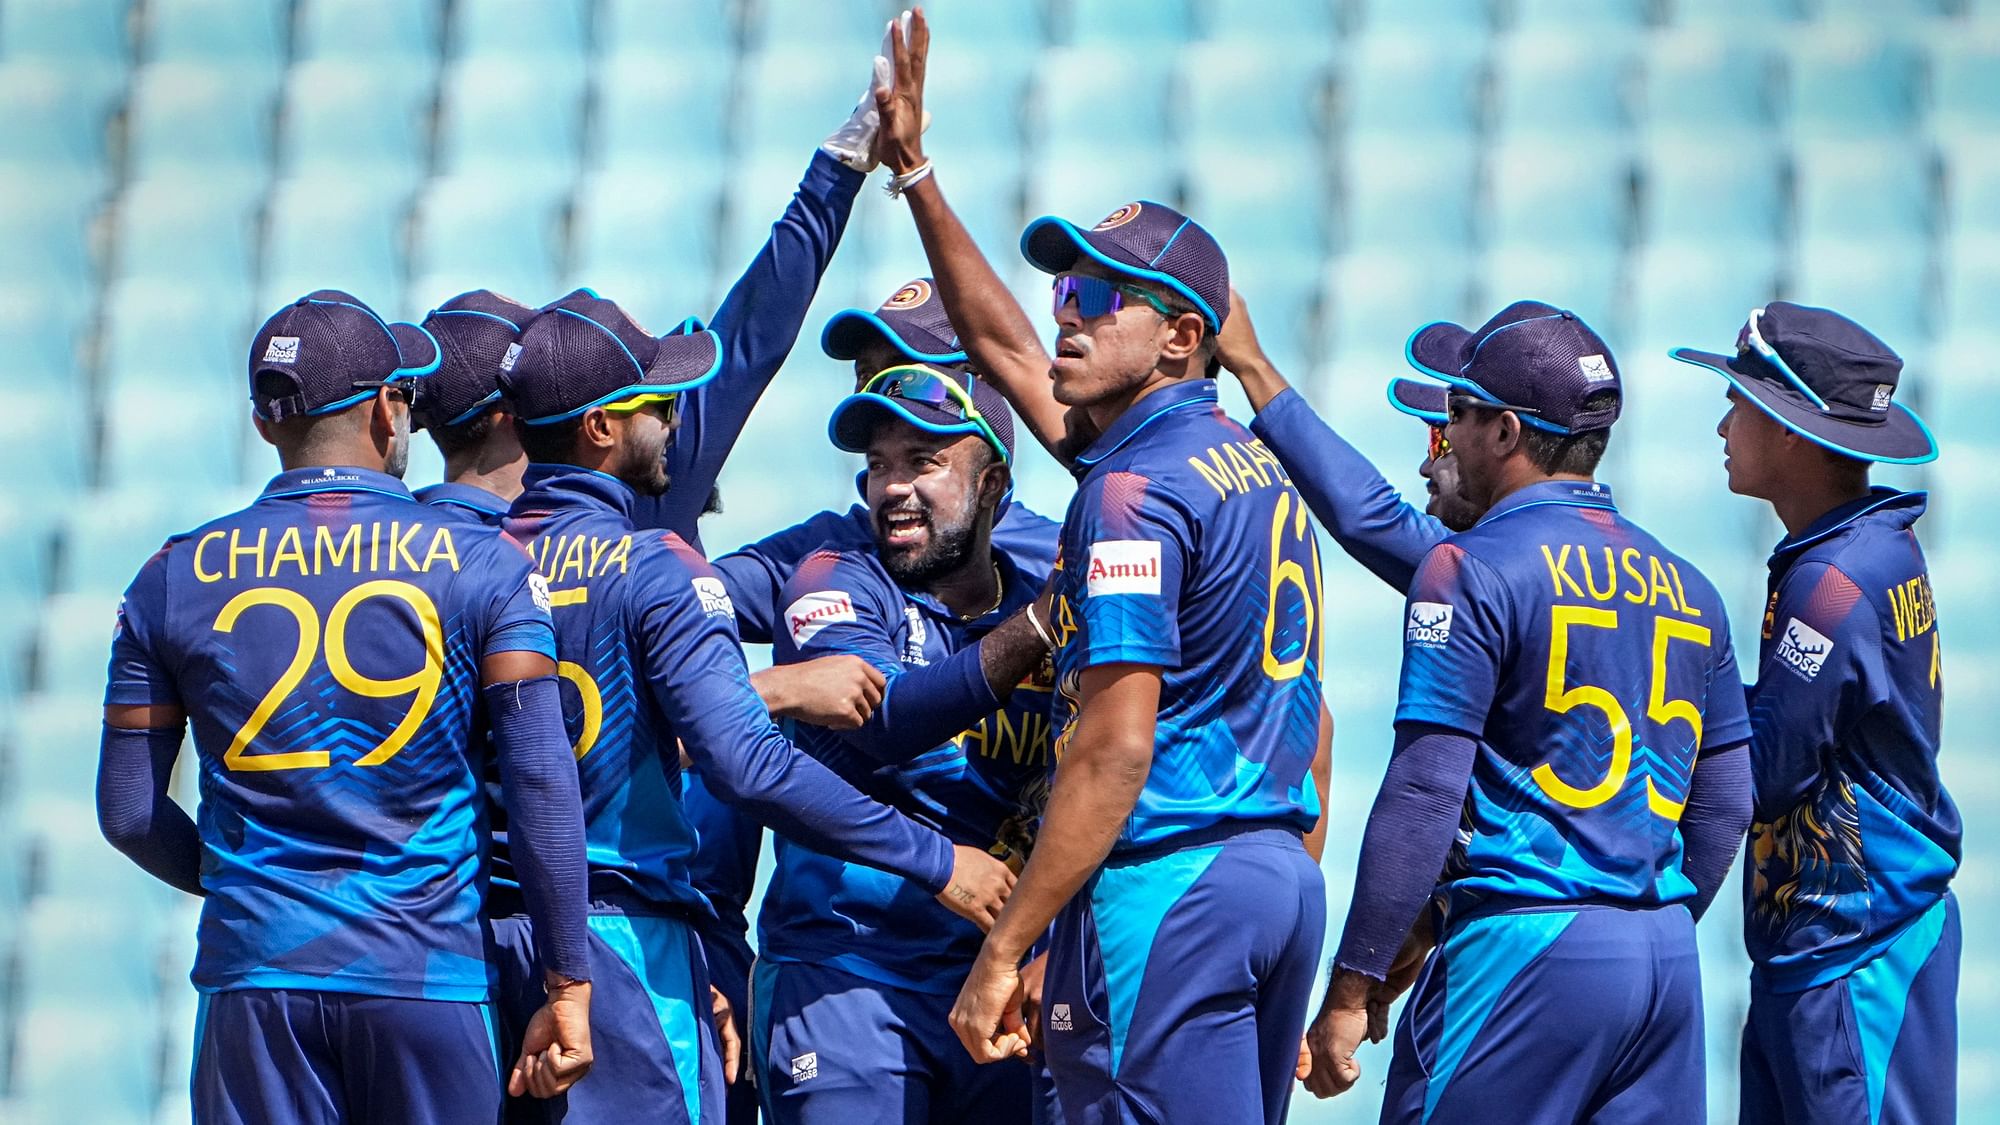 <div class="paragraphs"><p>Sri Lanka क्रिकेट बोर्ड में बढ़ते सरकारी दखल के बाद एक्शन, ICC ने किया सस्पेंड</p></div>